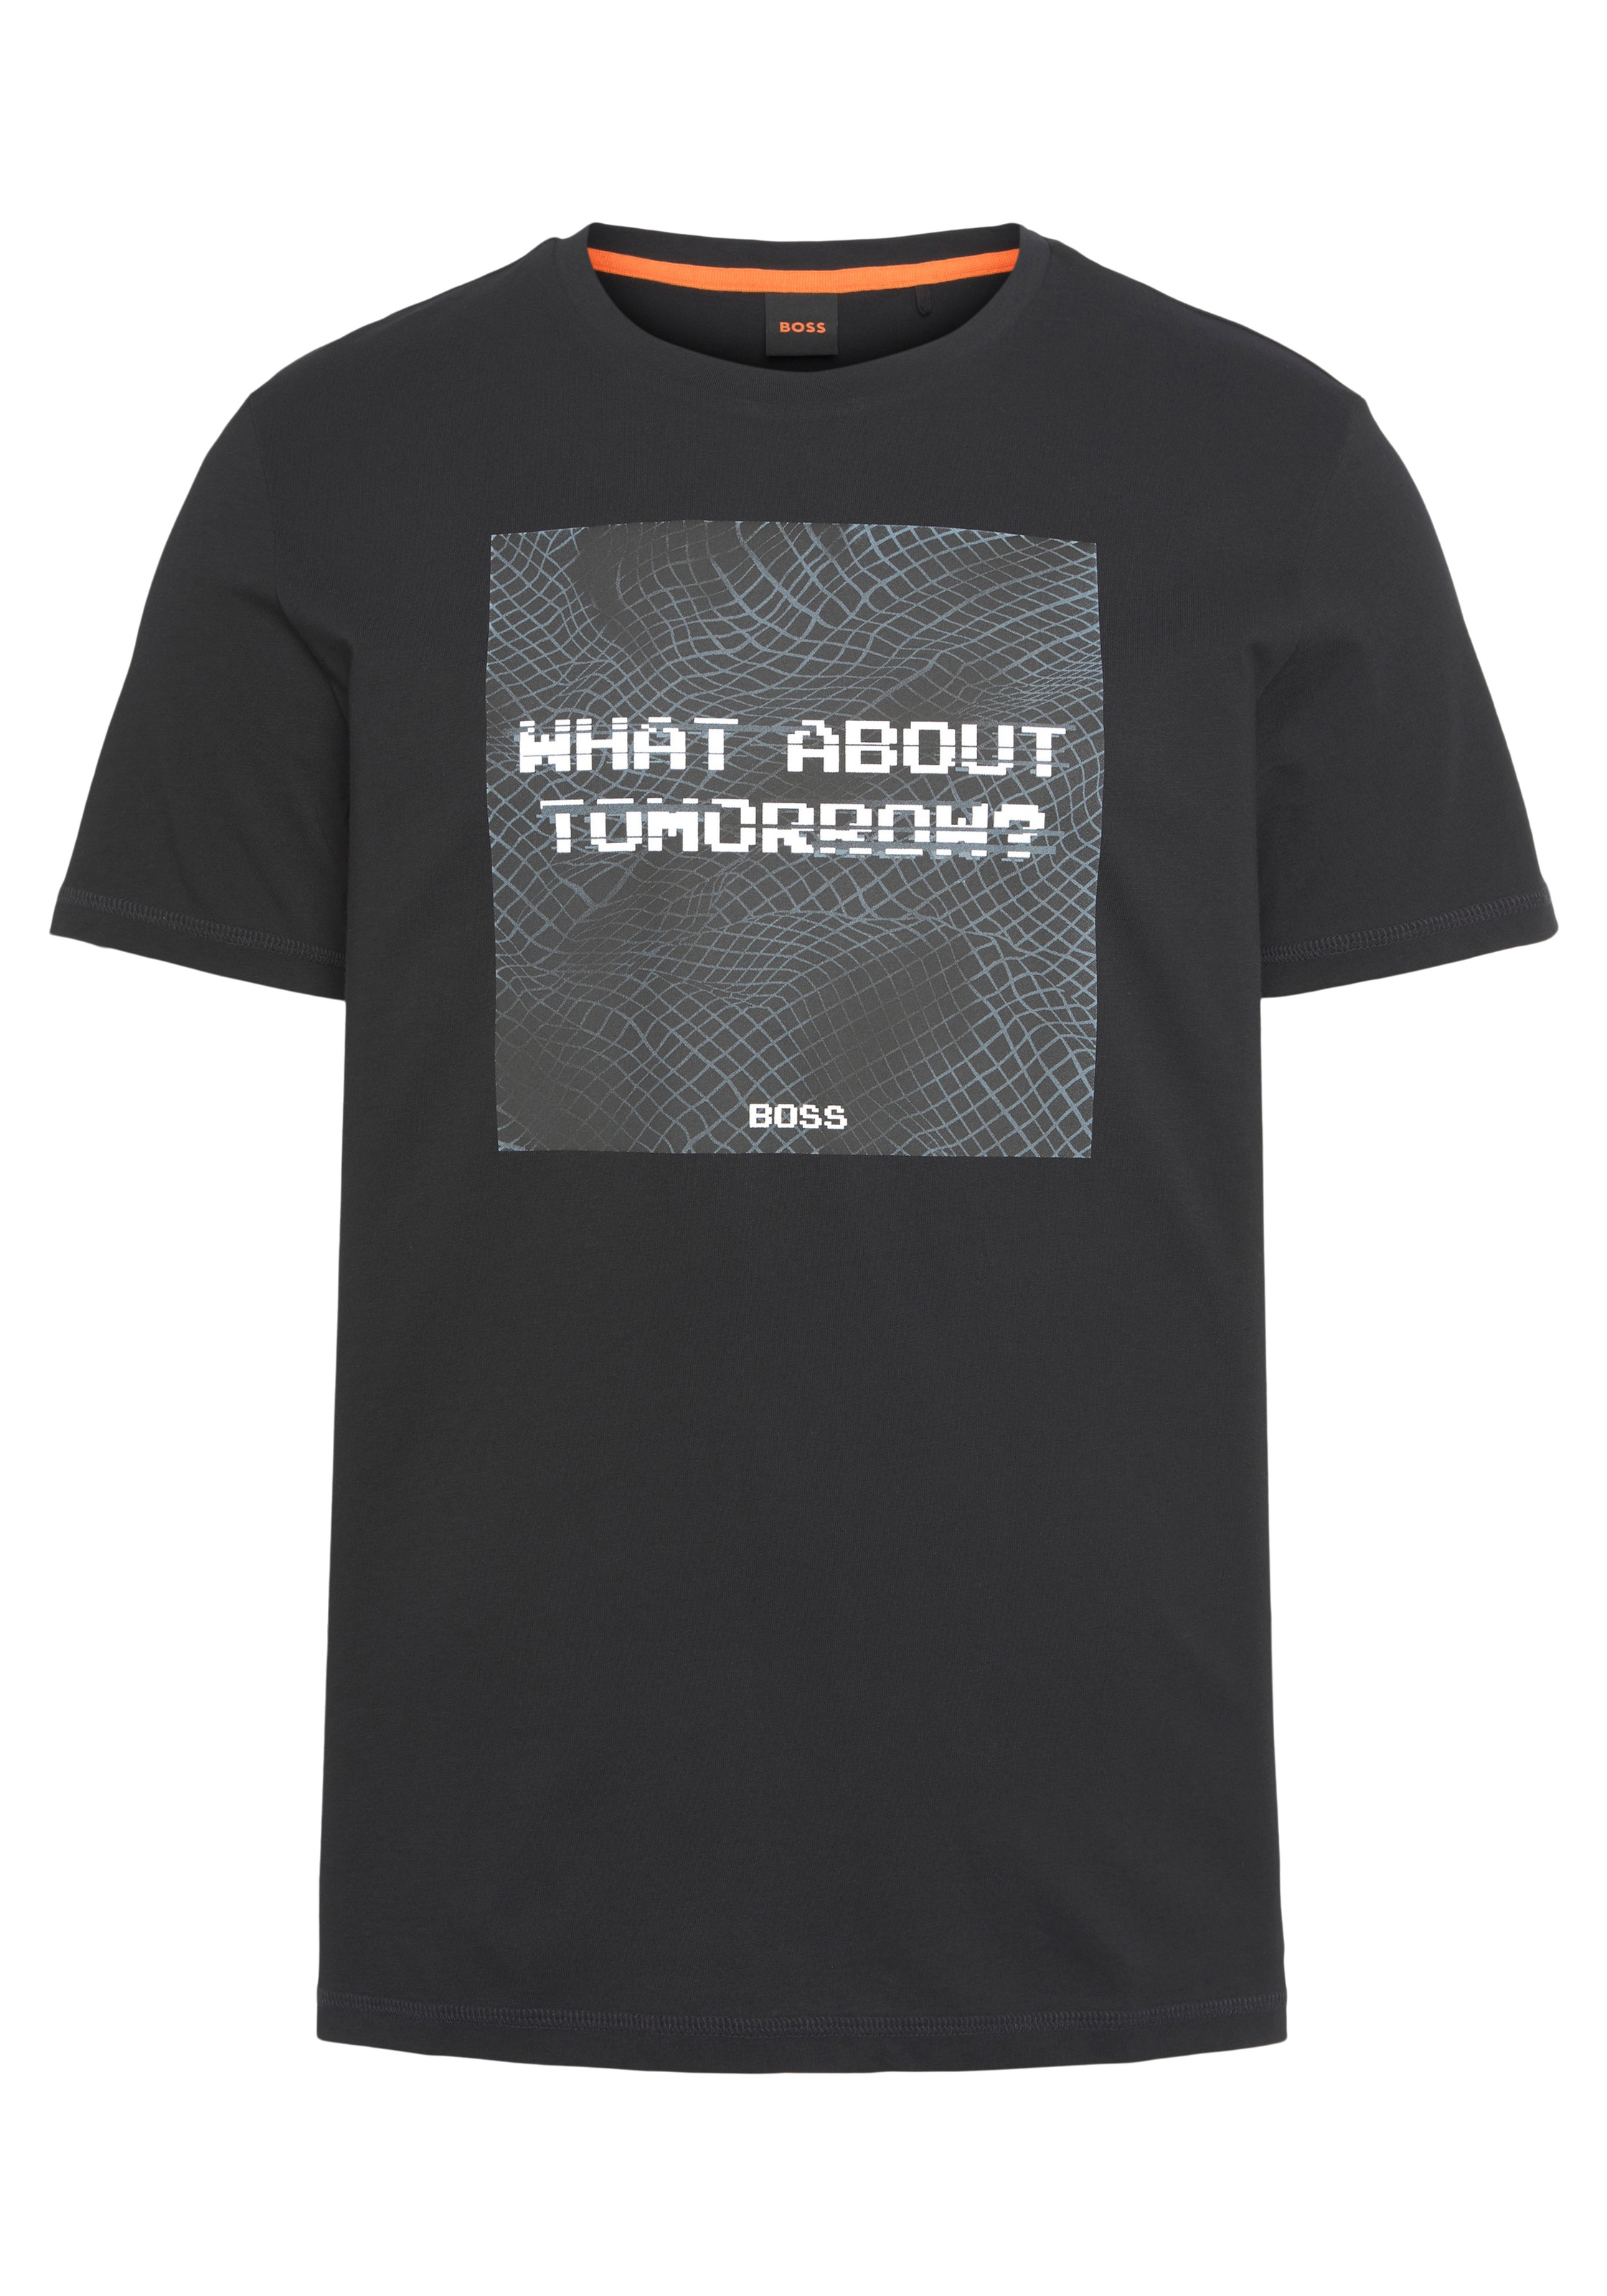 »TeMessage«, BOSS Brust großem T-Shirt bei der mit ♕ ORANGE Print auf